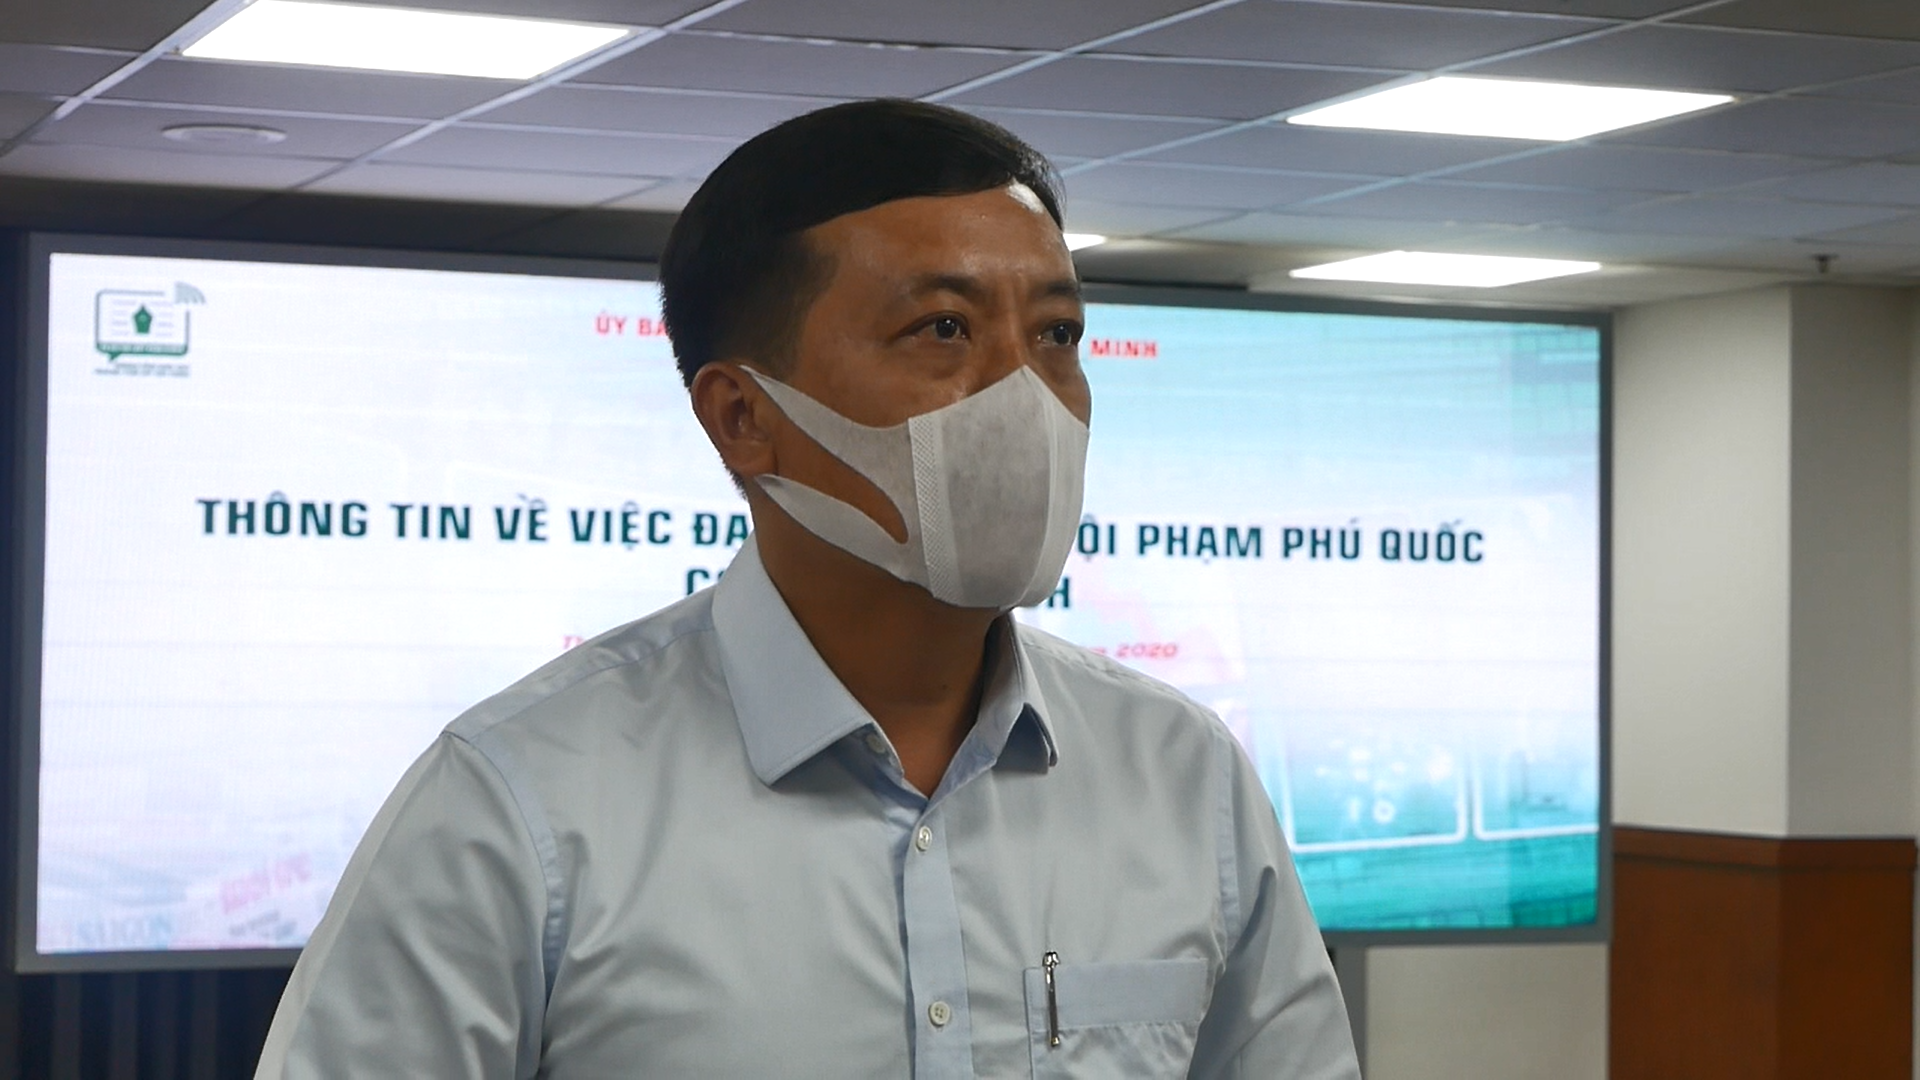 Ông Hà Phước Thắng – Chánh văn phòng UBND TPHCM thông tin hướng xử lý với ông Phạm Phú Quốc.  Ảnh: Anh Tú